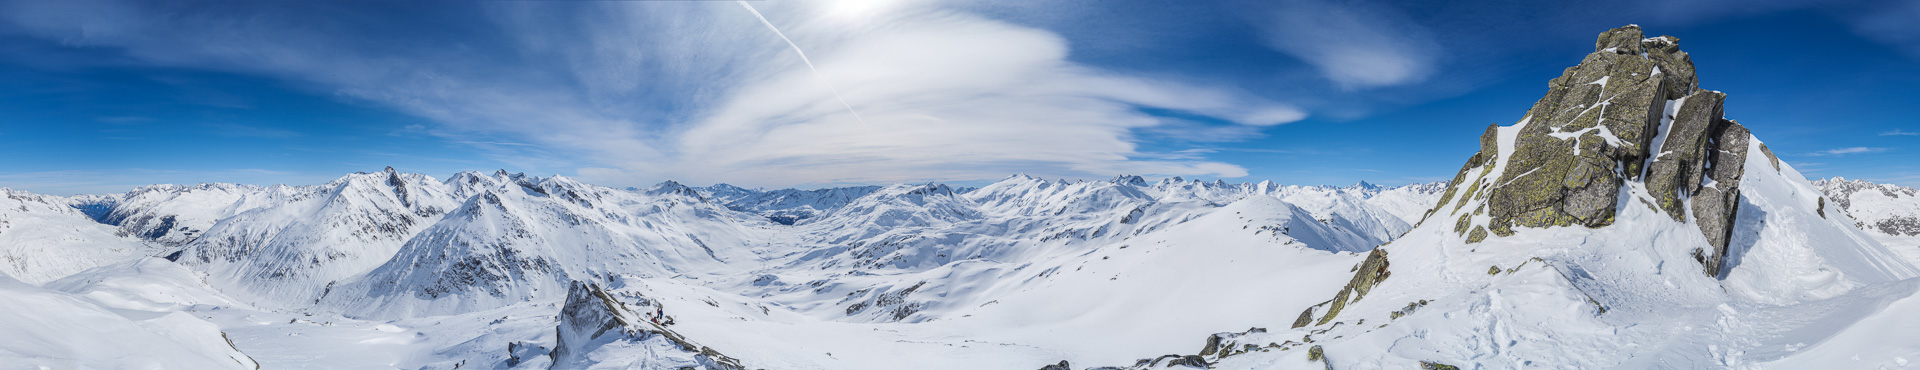 Ein wunderschönes Vorgipfelpanorama bei herrlichstem Winterwetter zwischen Graubünden und Tessin.